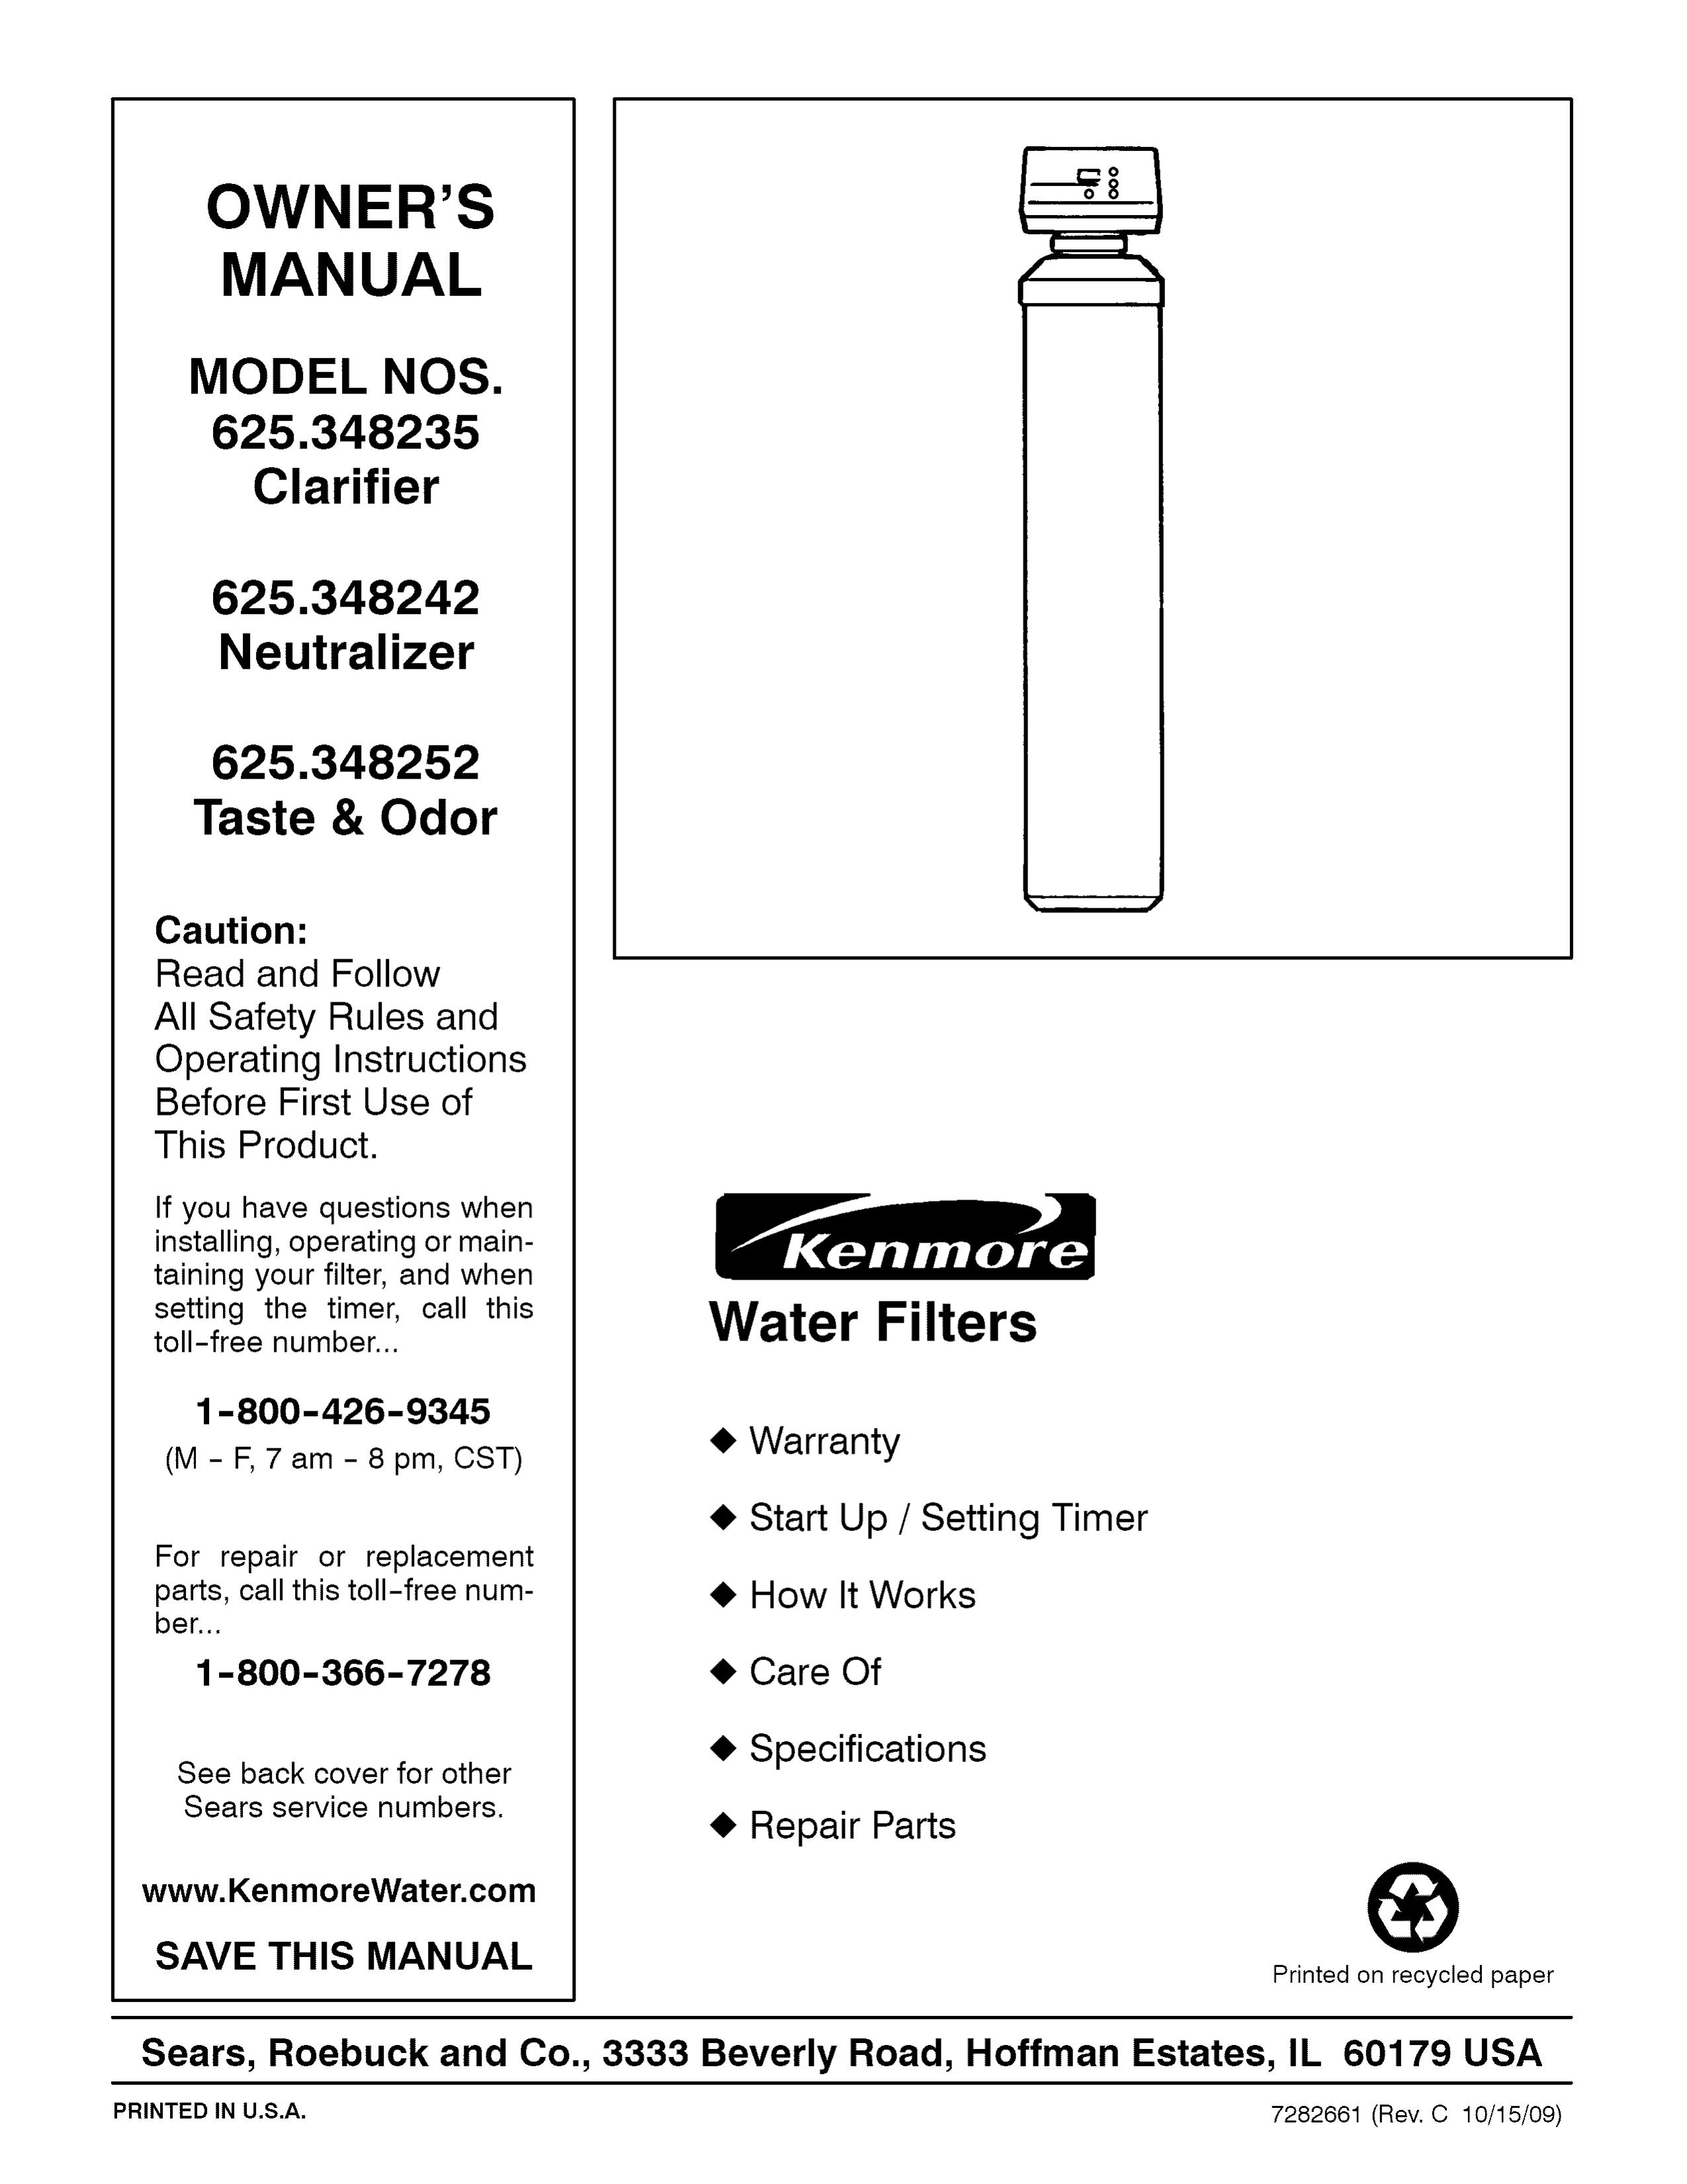 Kenmore 625.348242 Water Dispenser User Manual